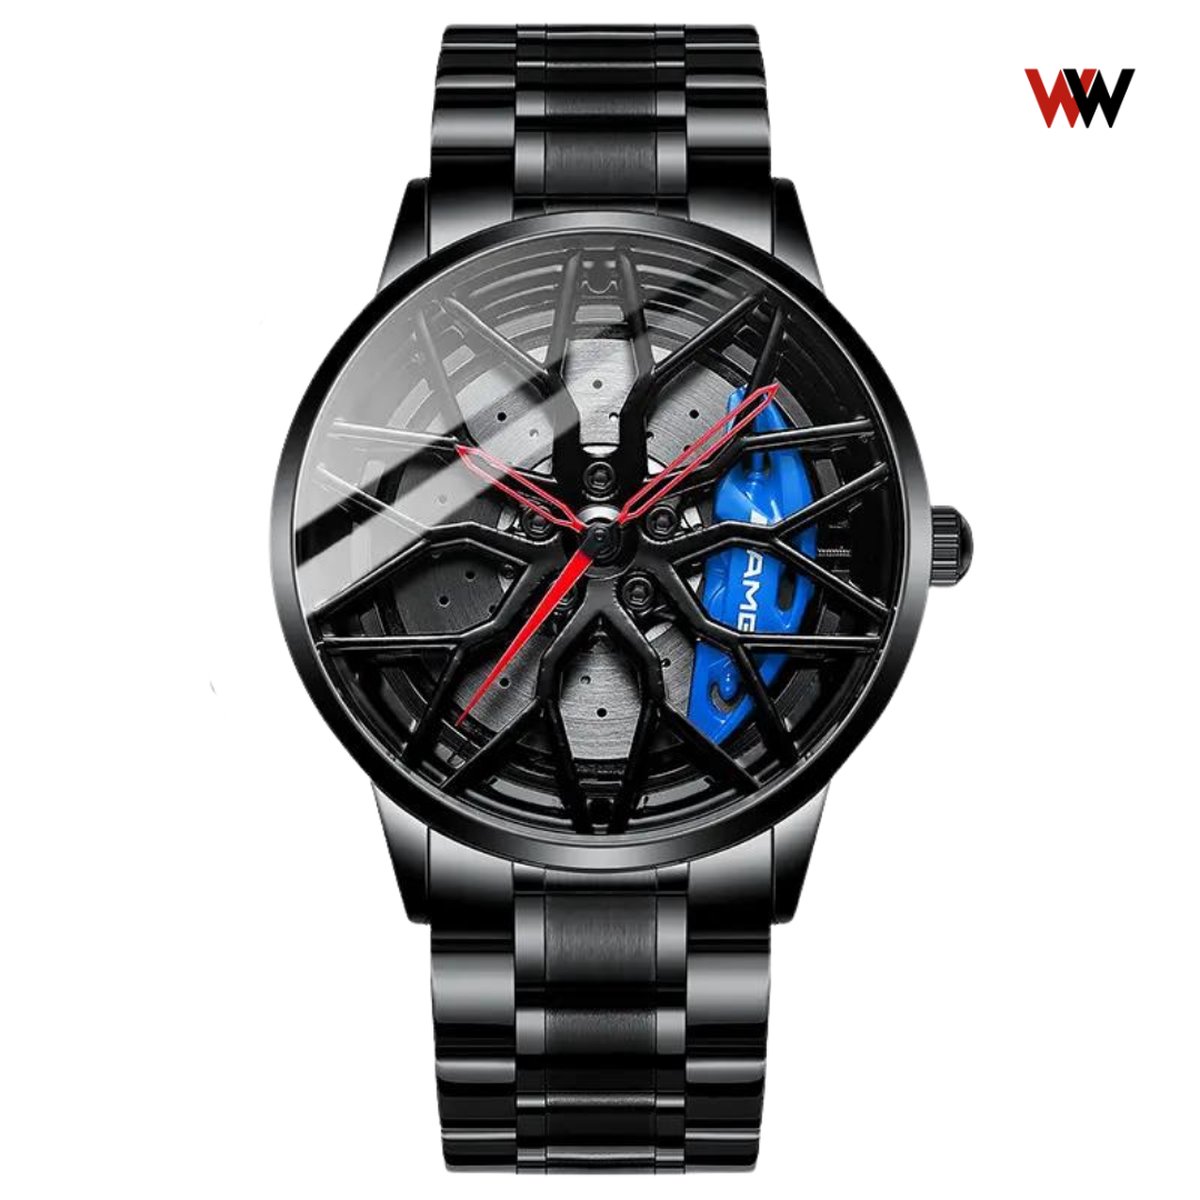 WielWatch - Horloge AMG blauw draaibaar - Sportauto - Horloges met stalen band- Herenmode - Velghorloge - Cadeau mannen - Autovelg - Autoliefhebber - horloge jongens